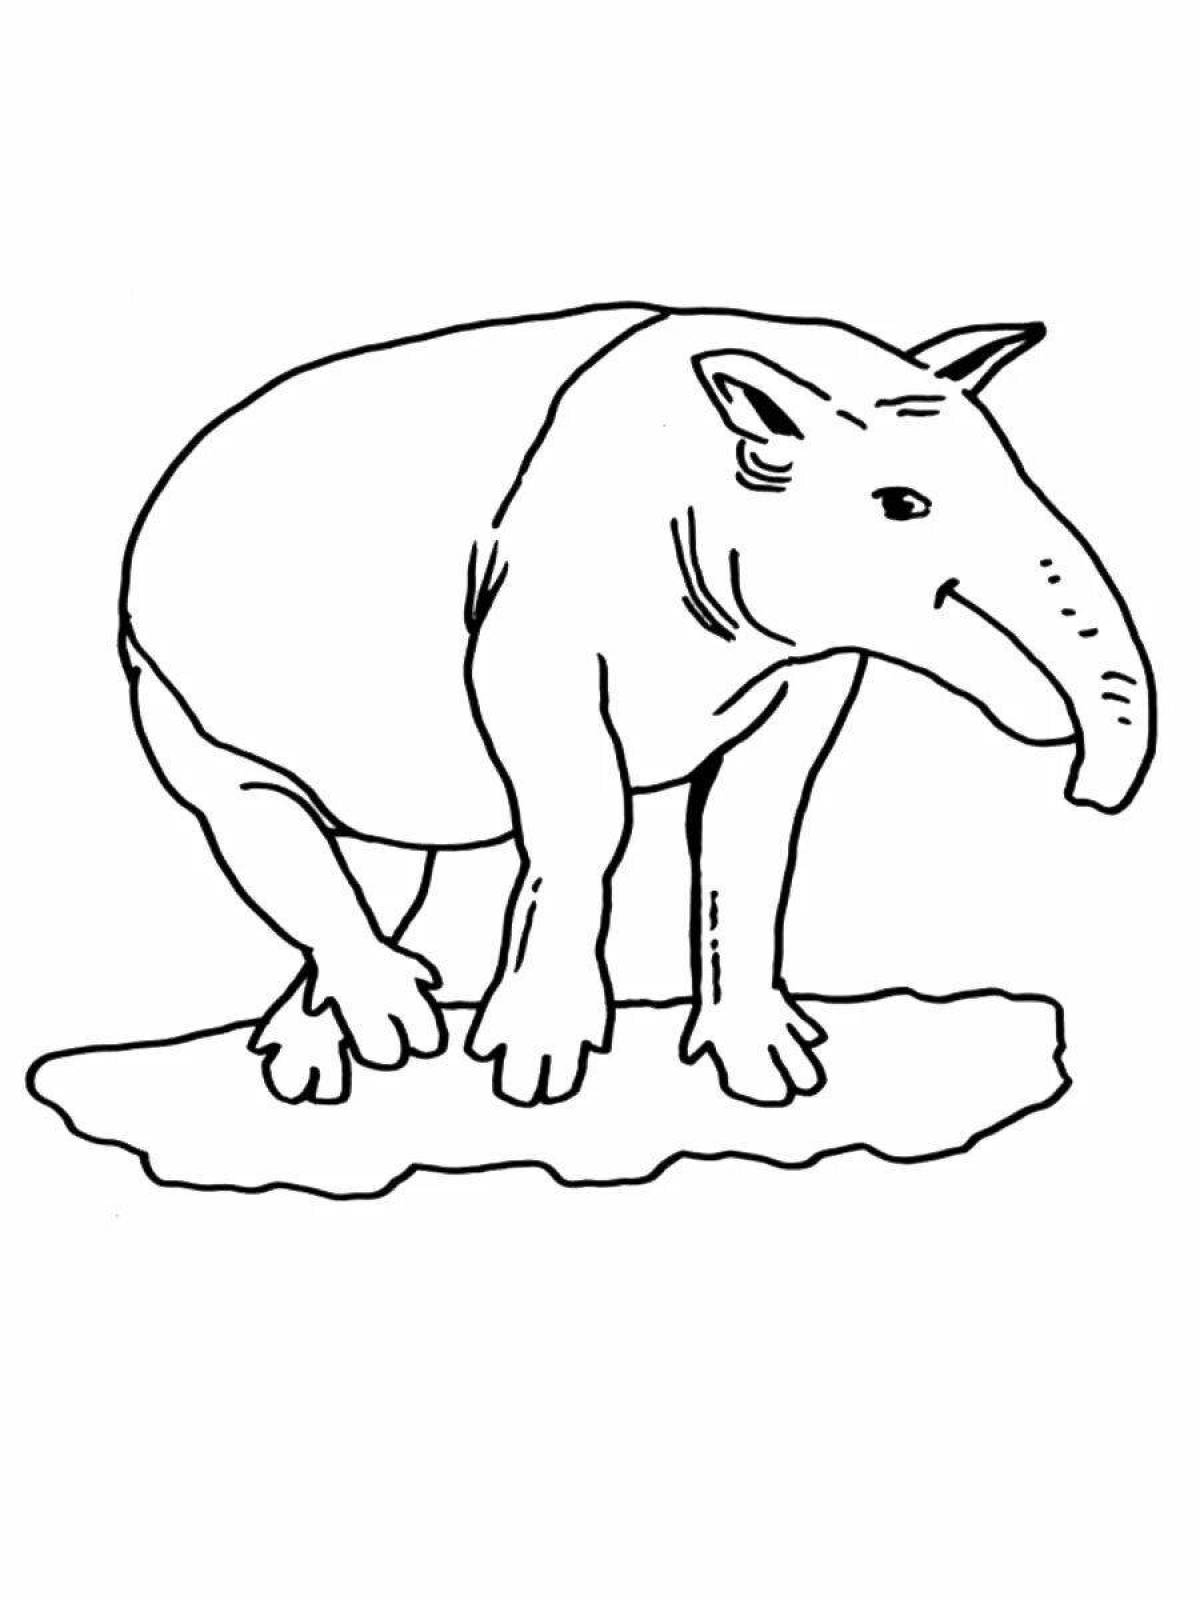 Strange tapir coloring book